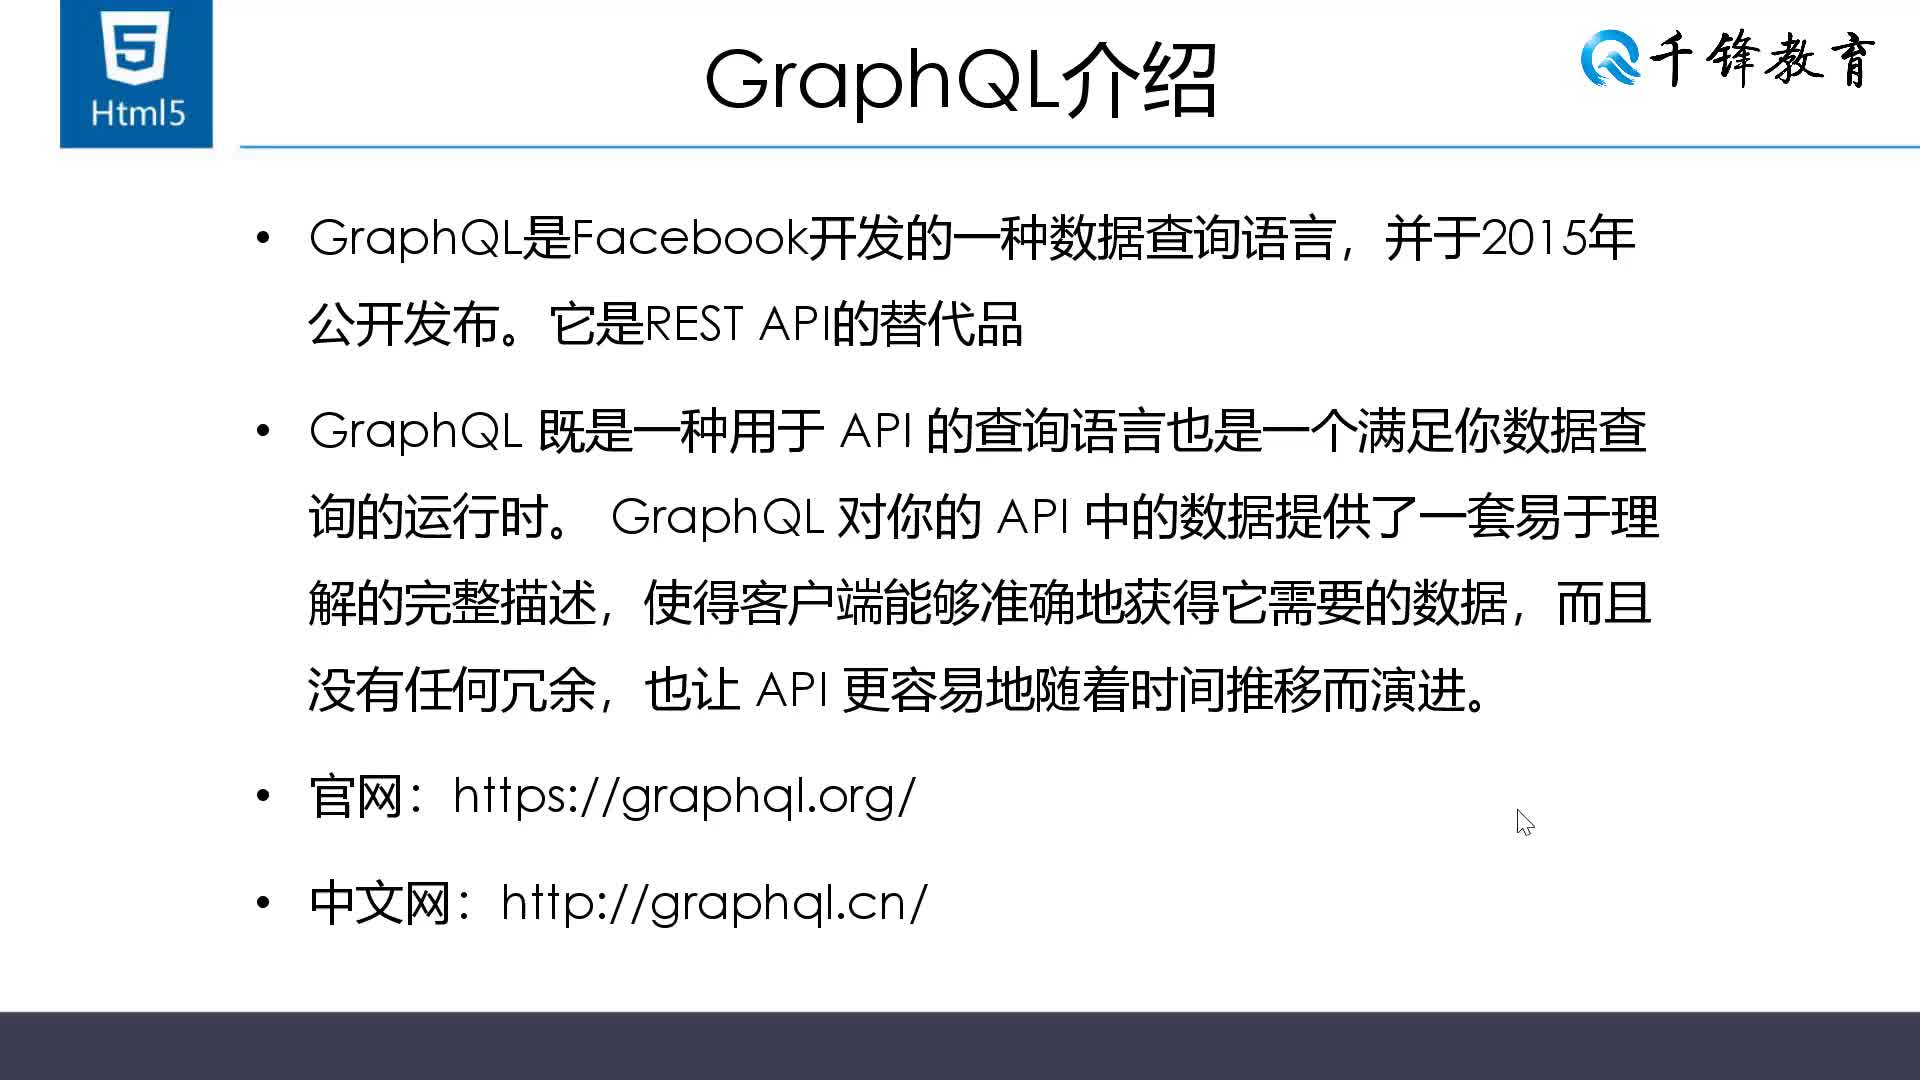  GraphQL：新的API标准、查询语言